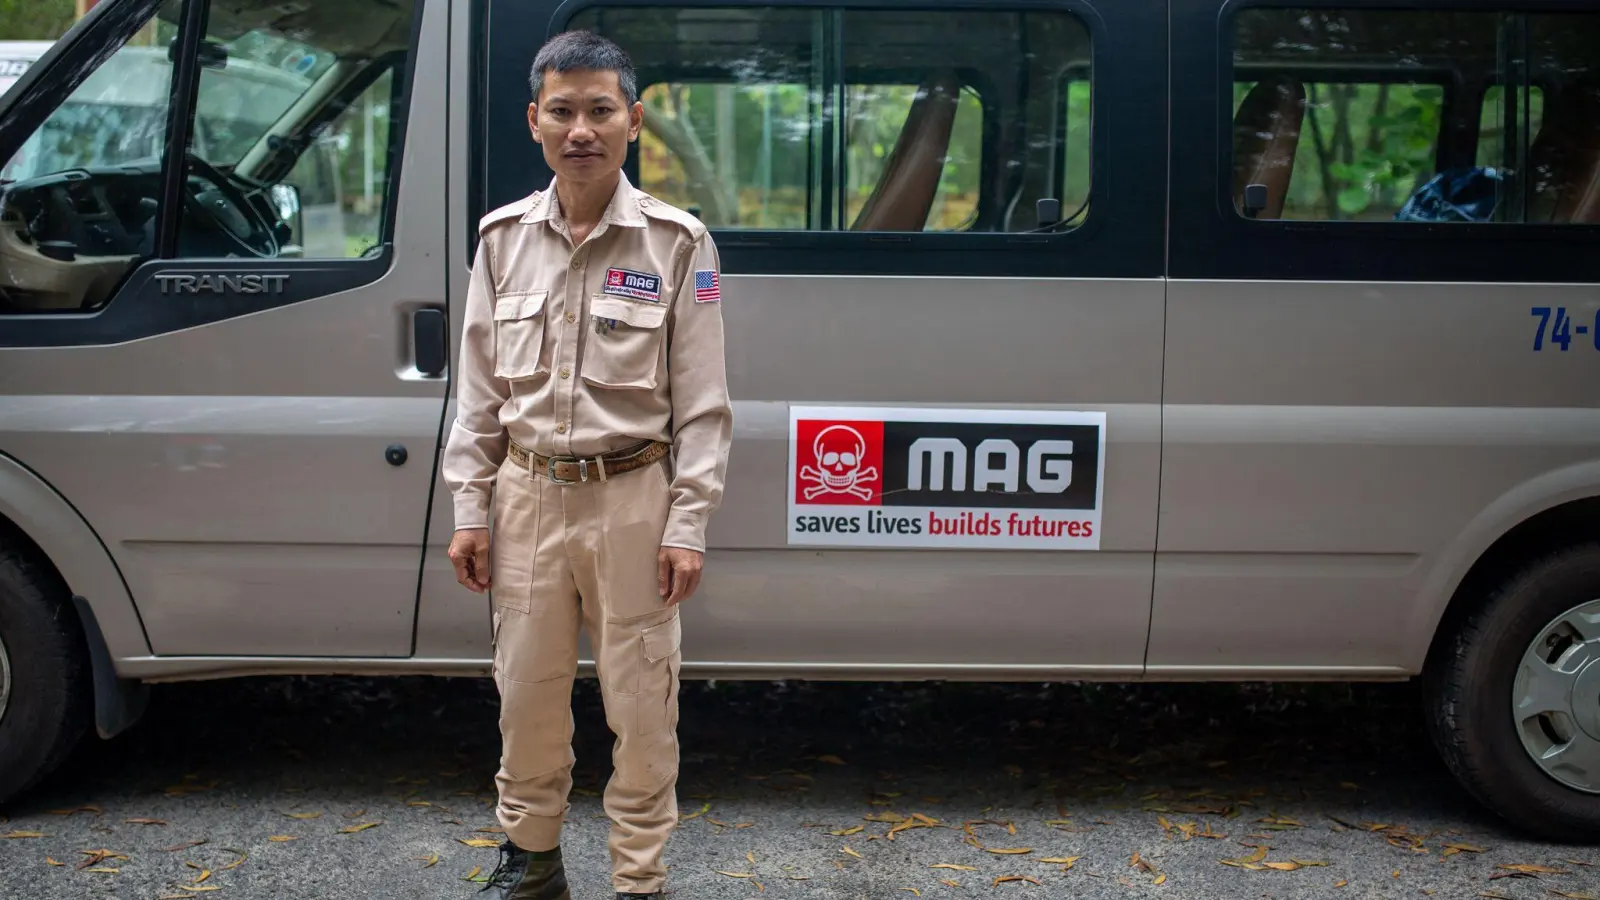 Thai Van Ninh arbeitet seit 2015 für MAG. Als er sechs Jahre alt war, wurde sein 12-jähriger Bruder auf dem Heimweg von der Schule durch nicht explodierte Sprengkörper getötet. (Foto: Chris Humphrey/dpa)